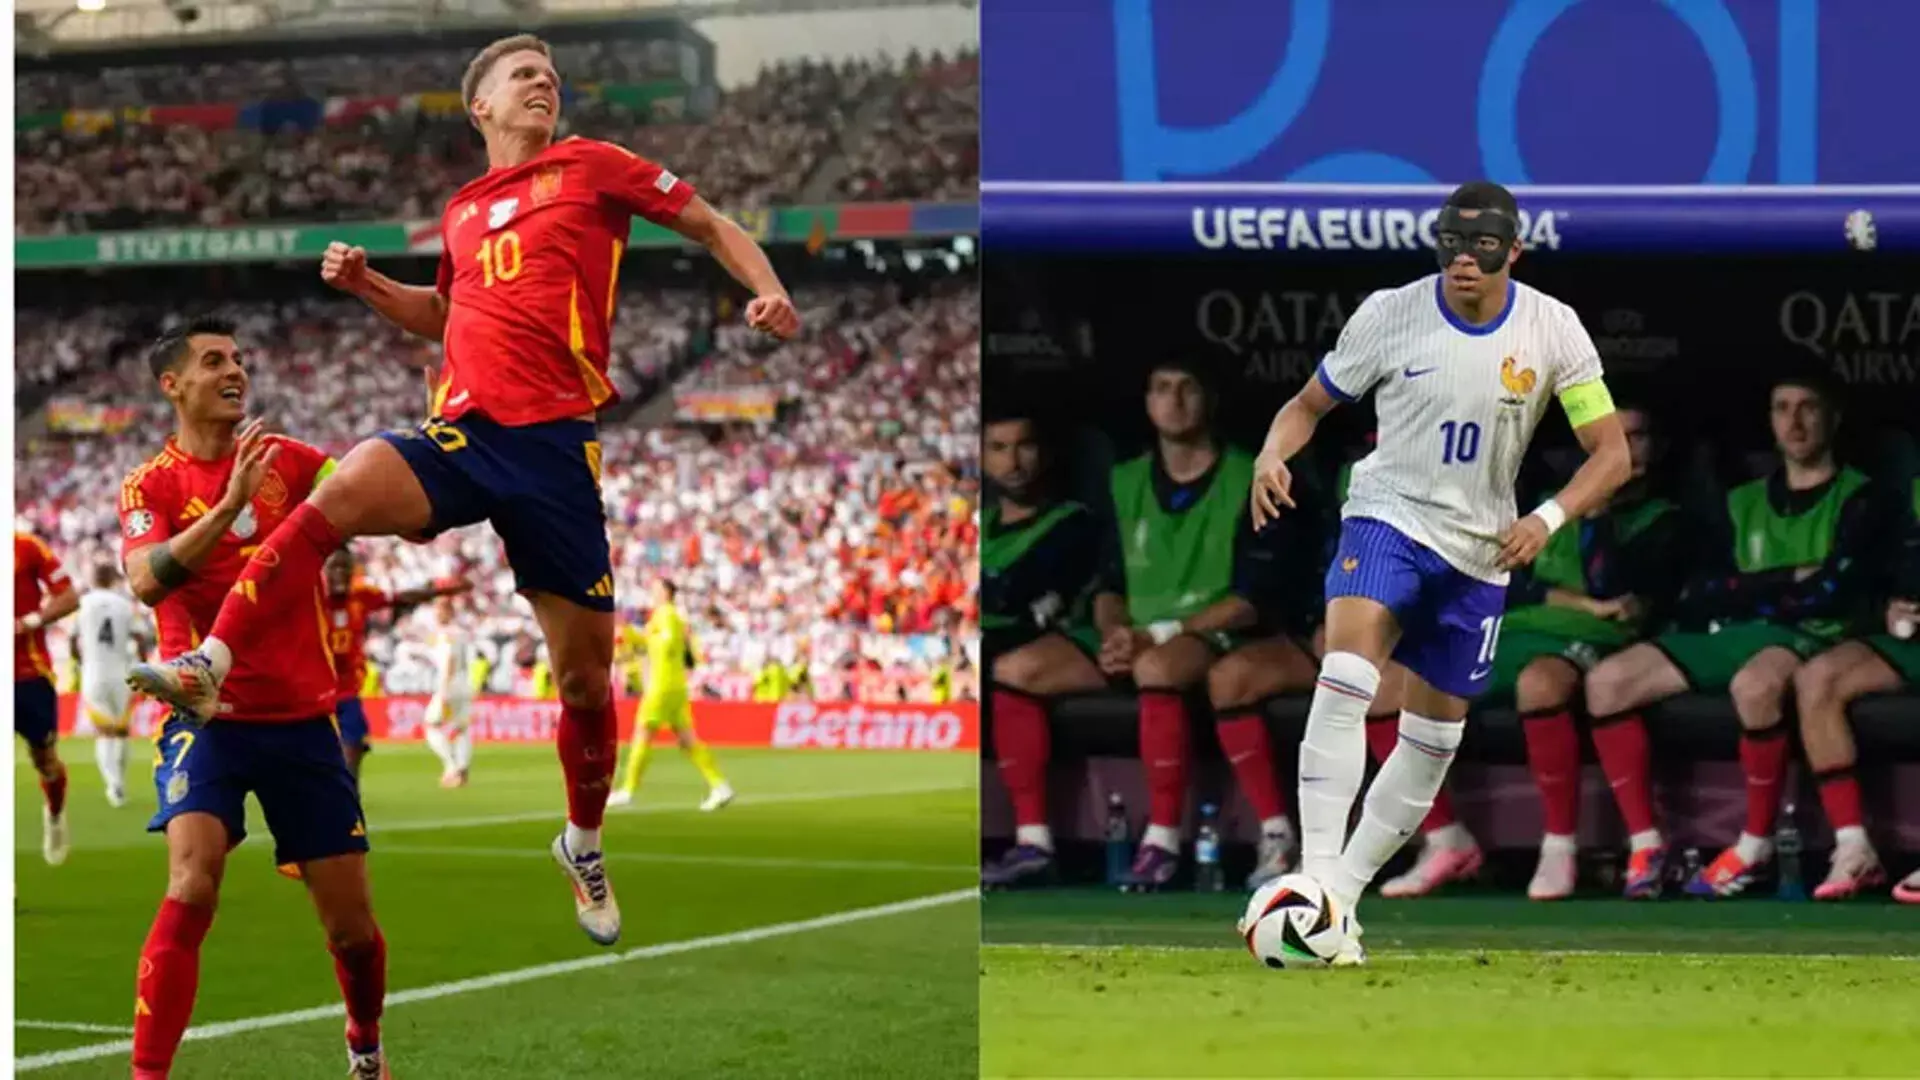 Spain vs France: सेमीफाइनल से पहले दोनों टीमों का एक दूसरे के खिलाफ प्रदर्शन कैसा रहा